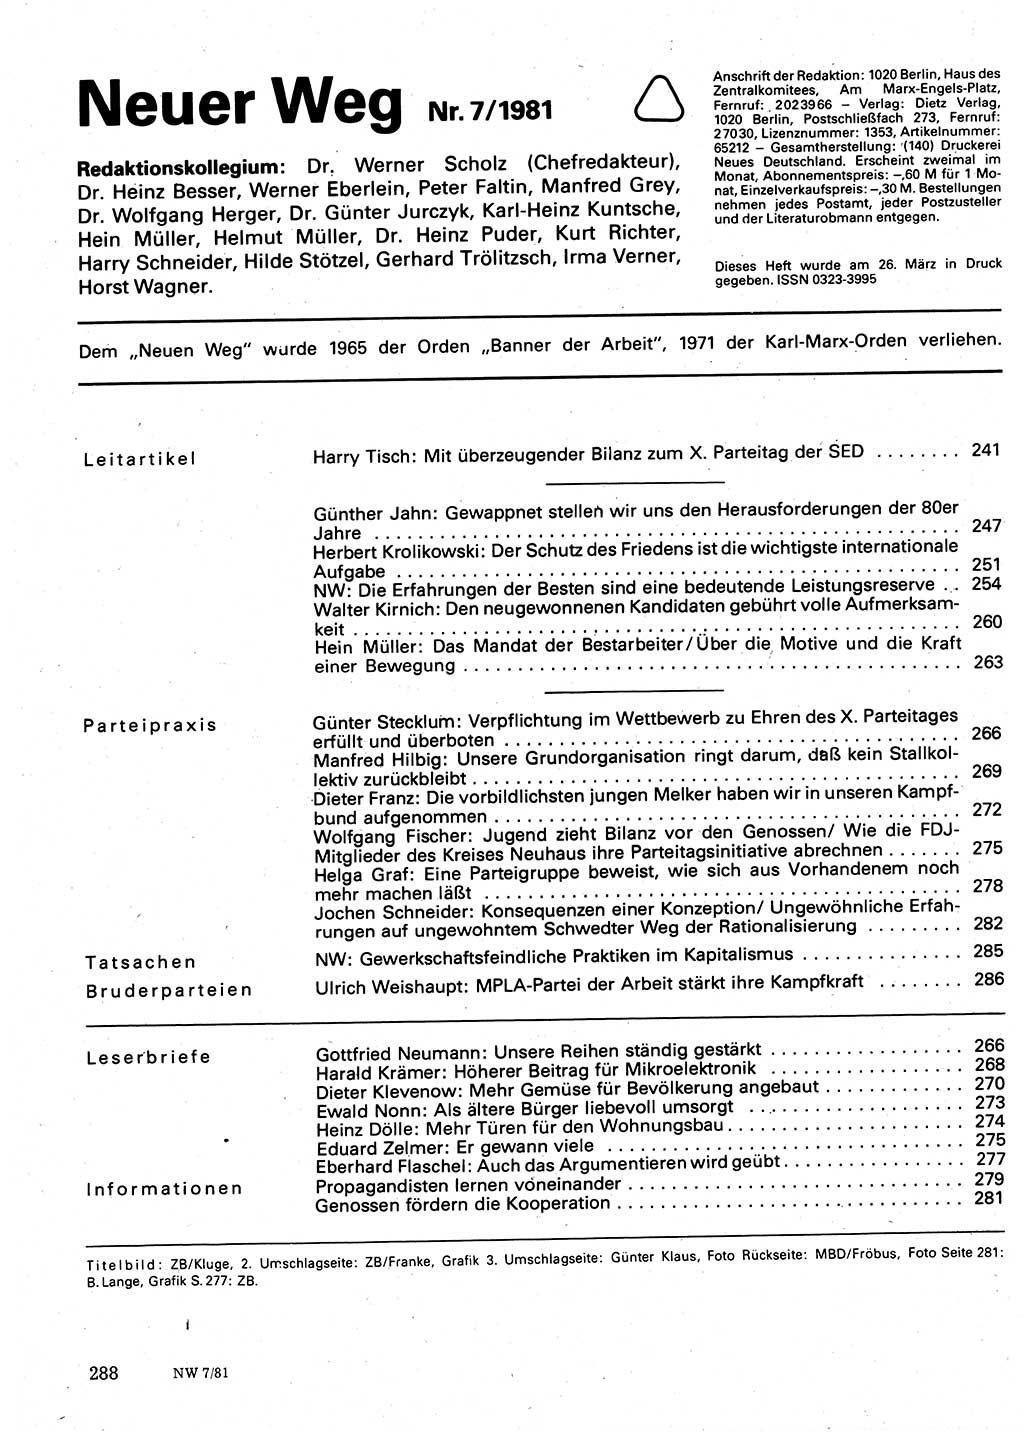 Neuer Weg (NW), Organ des Zentralkomitees (ZK) der SED (Sozialistische Einheitspartei Deutschlands) für Fragen des Parteilebens, 36. Jahrgang [Deutsche Demokratische Republik (DDR)] 1981, Seite 288 (NW ZK SED DDR 1981, S. 288)